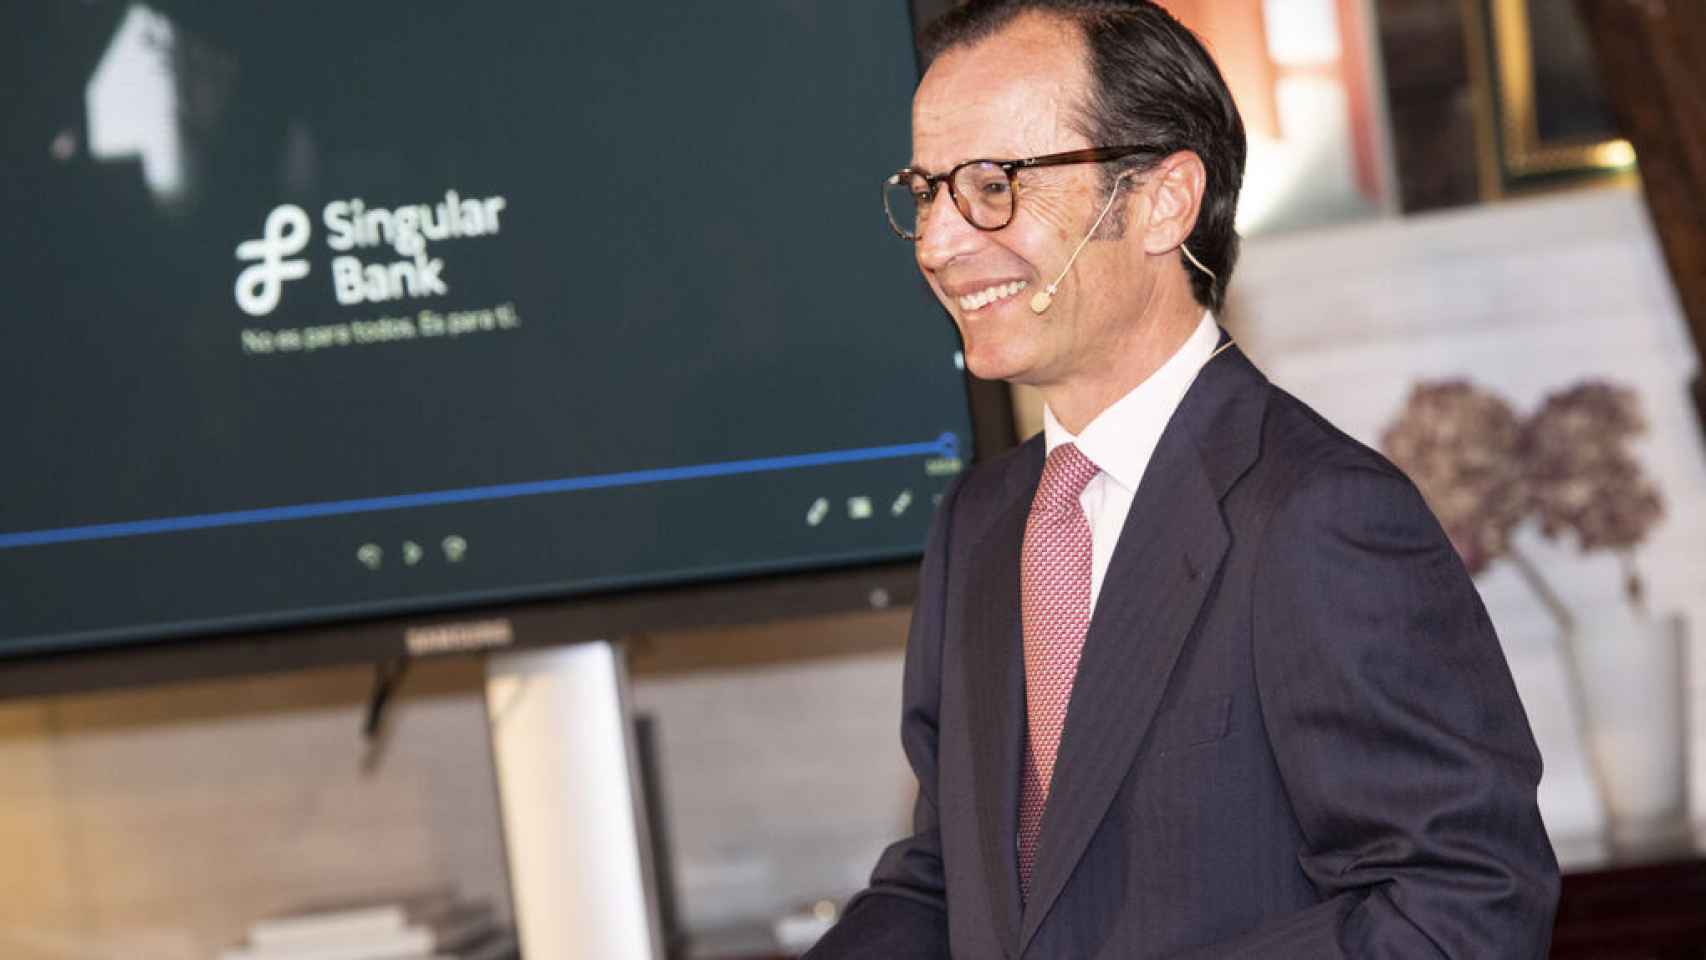 Javier Marín, consejero delegado de Singular Bank.